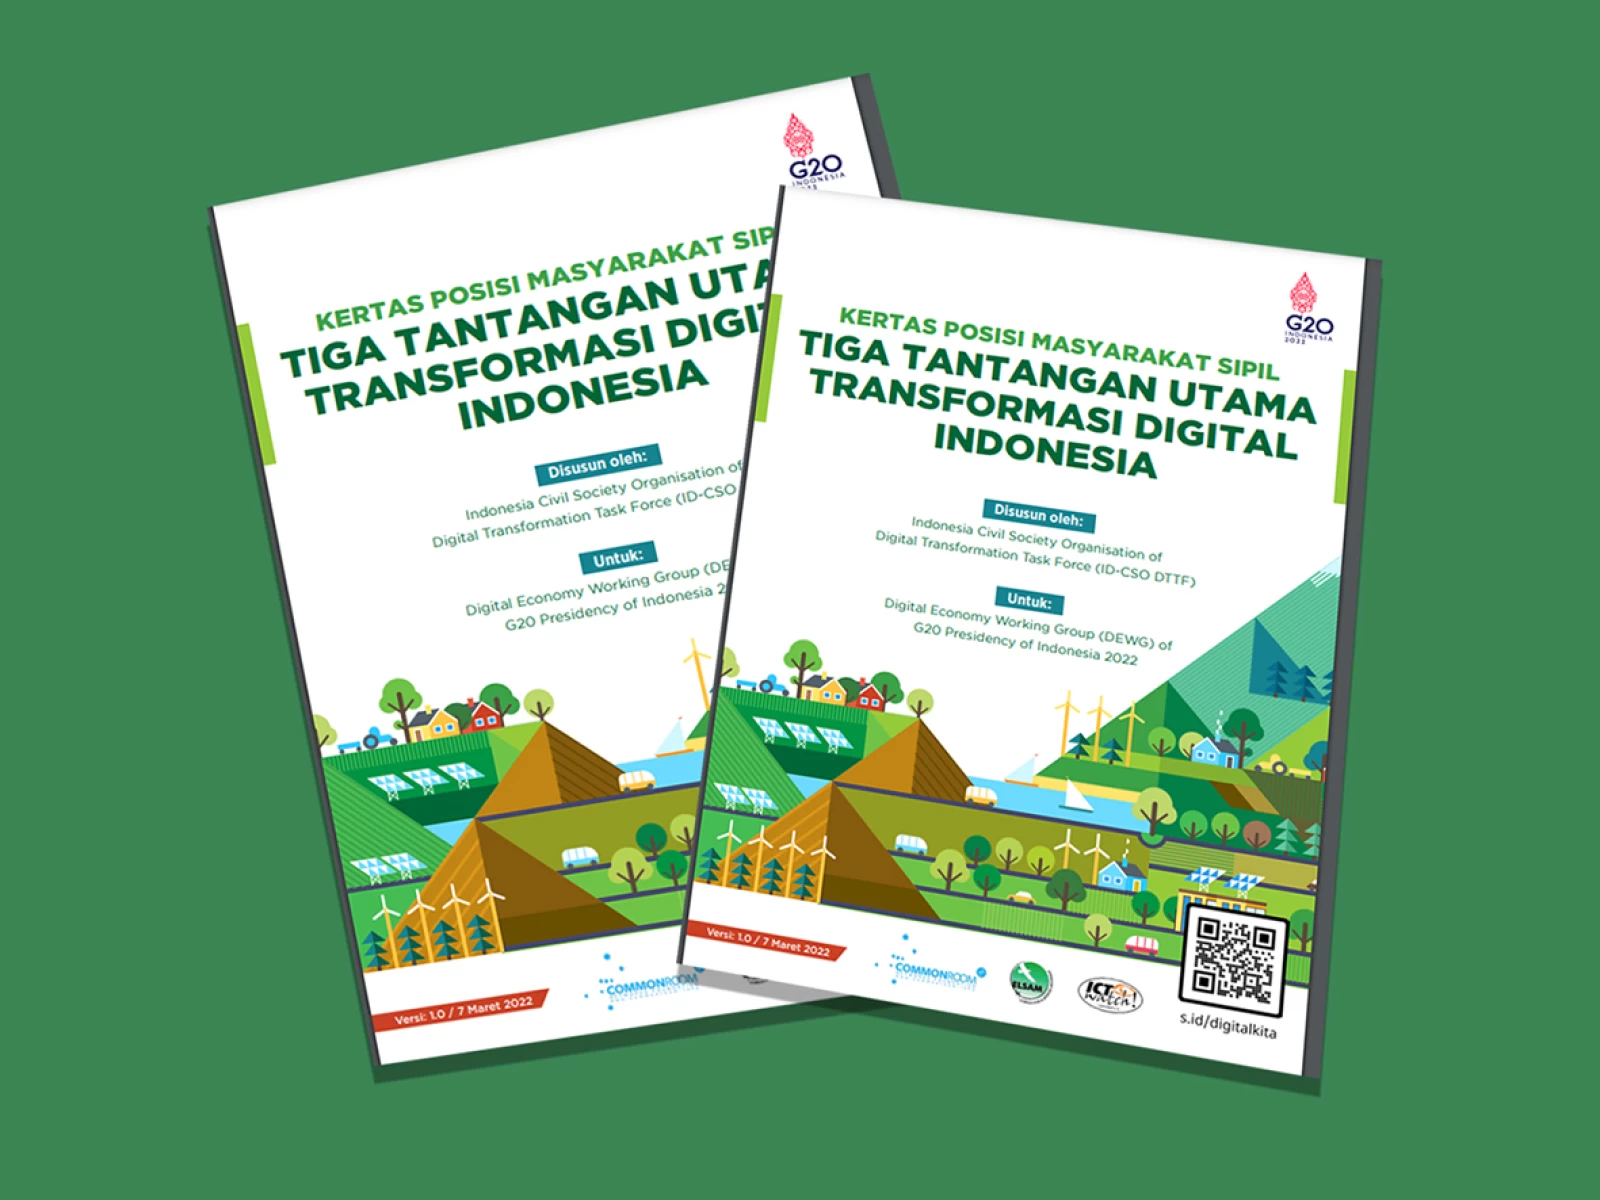 Dorong Transformasi Digital Presidensi G20, Pekerjaan Rumah Indonesia Mesti Serius Dikerjakan